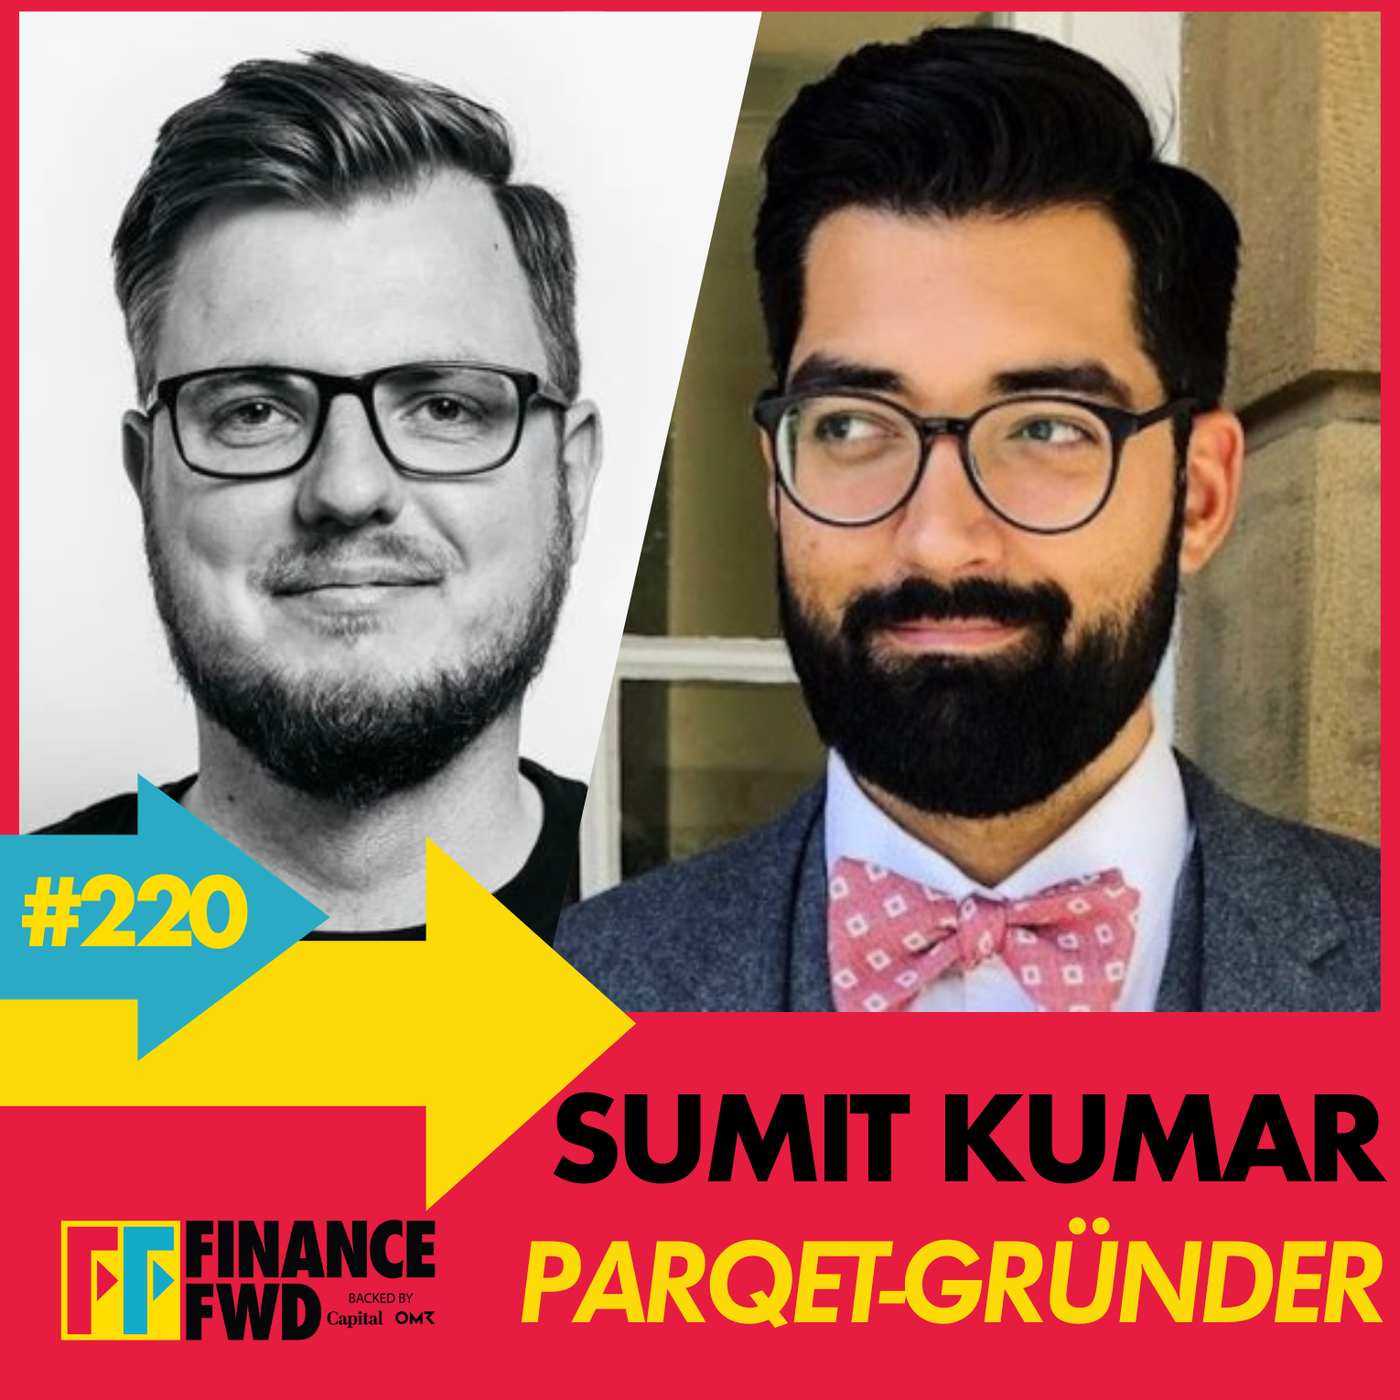 FinanceFWD #220 mit Parqet-Gründer Sumit Kumar